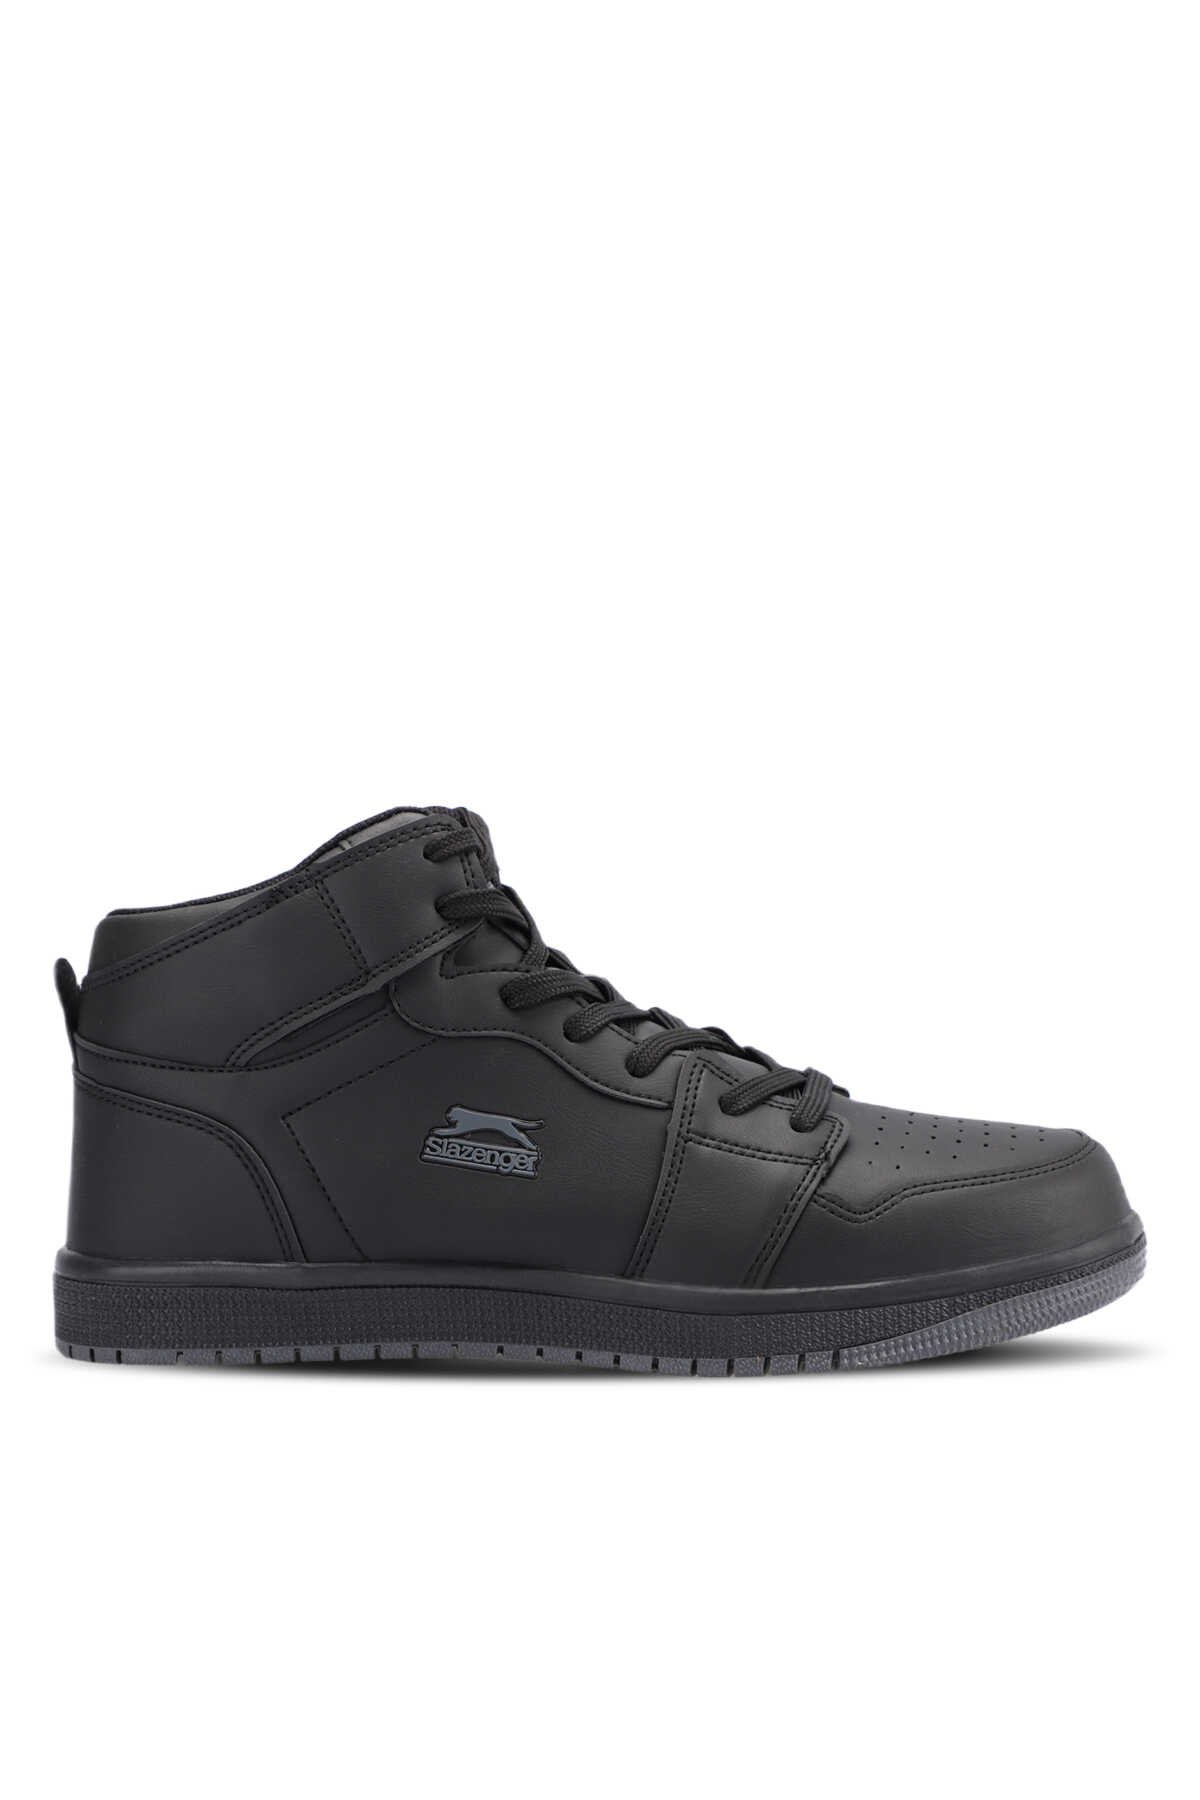 Slazenger - Slazenger LABOR HIGH Sneaker Erkek Ayakkabı Siyah / Siyah